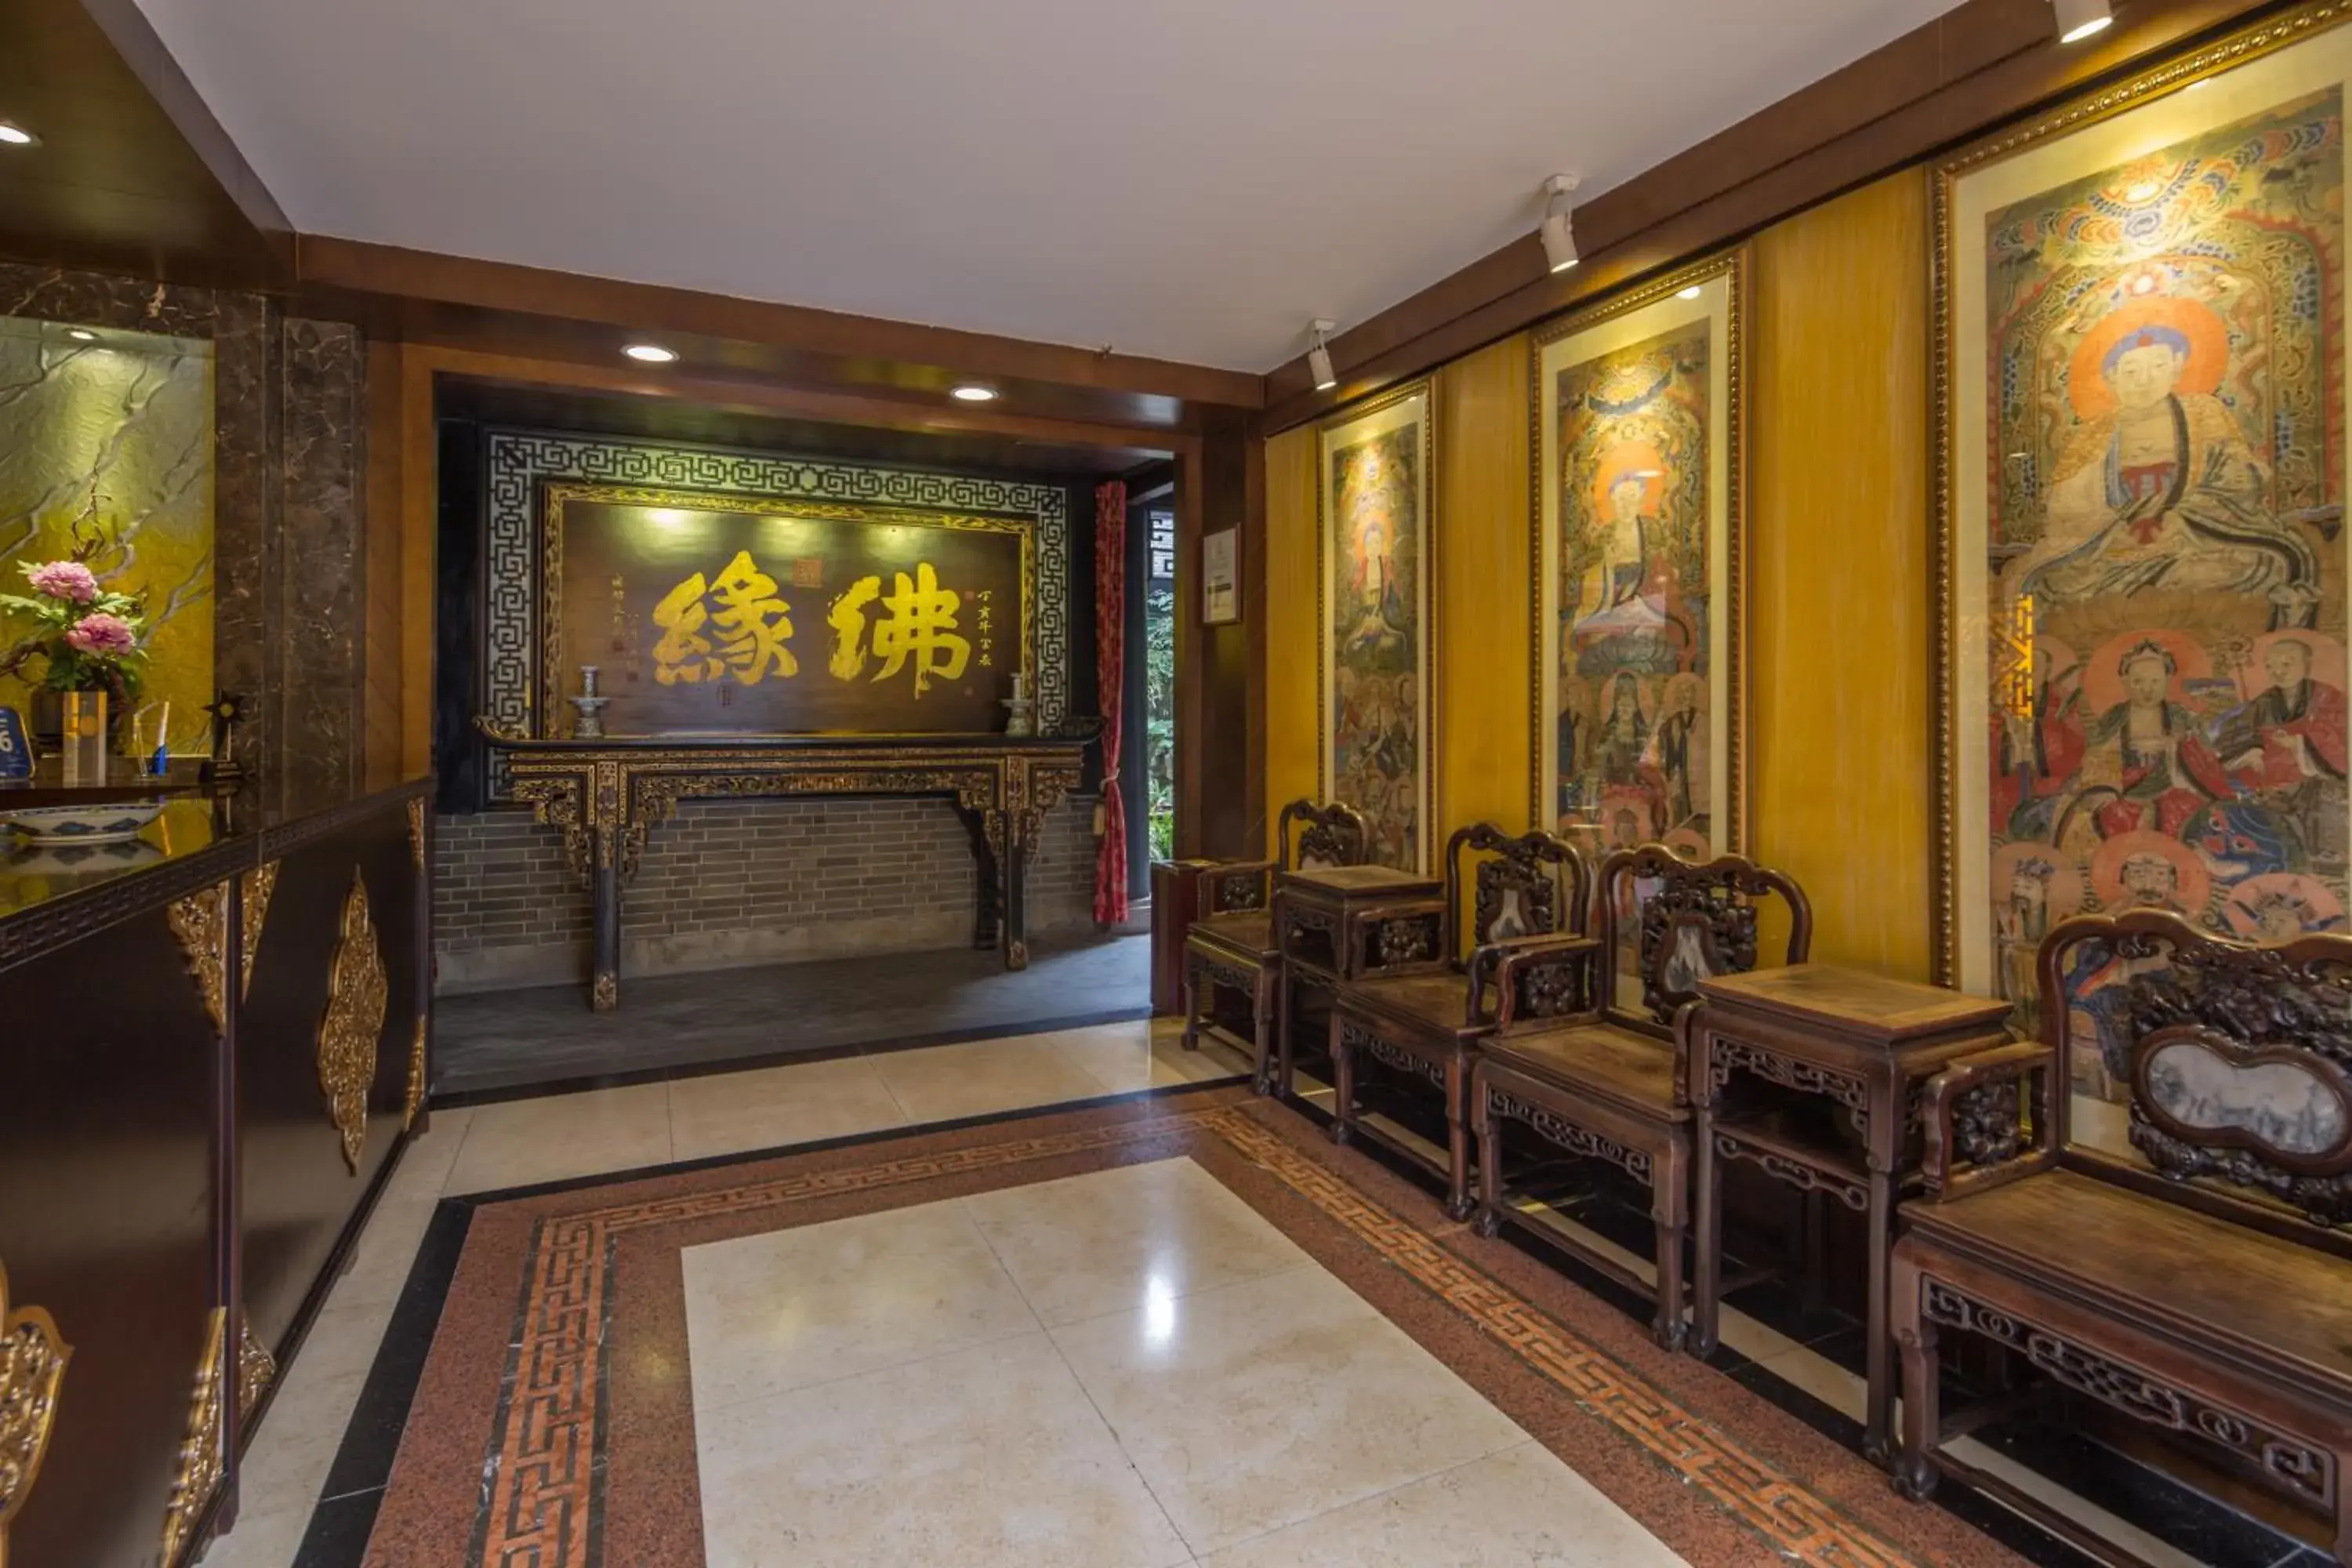 Lobby or reception, Lobby/Reception in Buddhazen Hotel